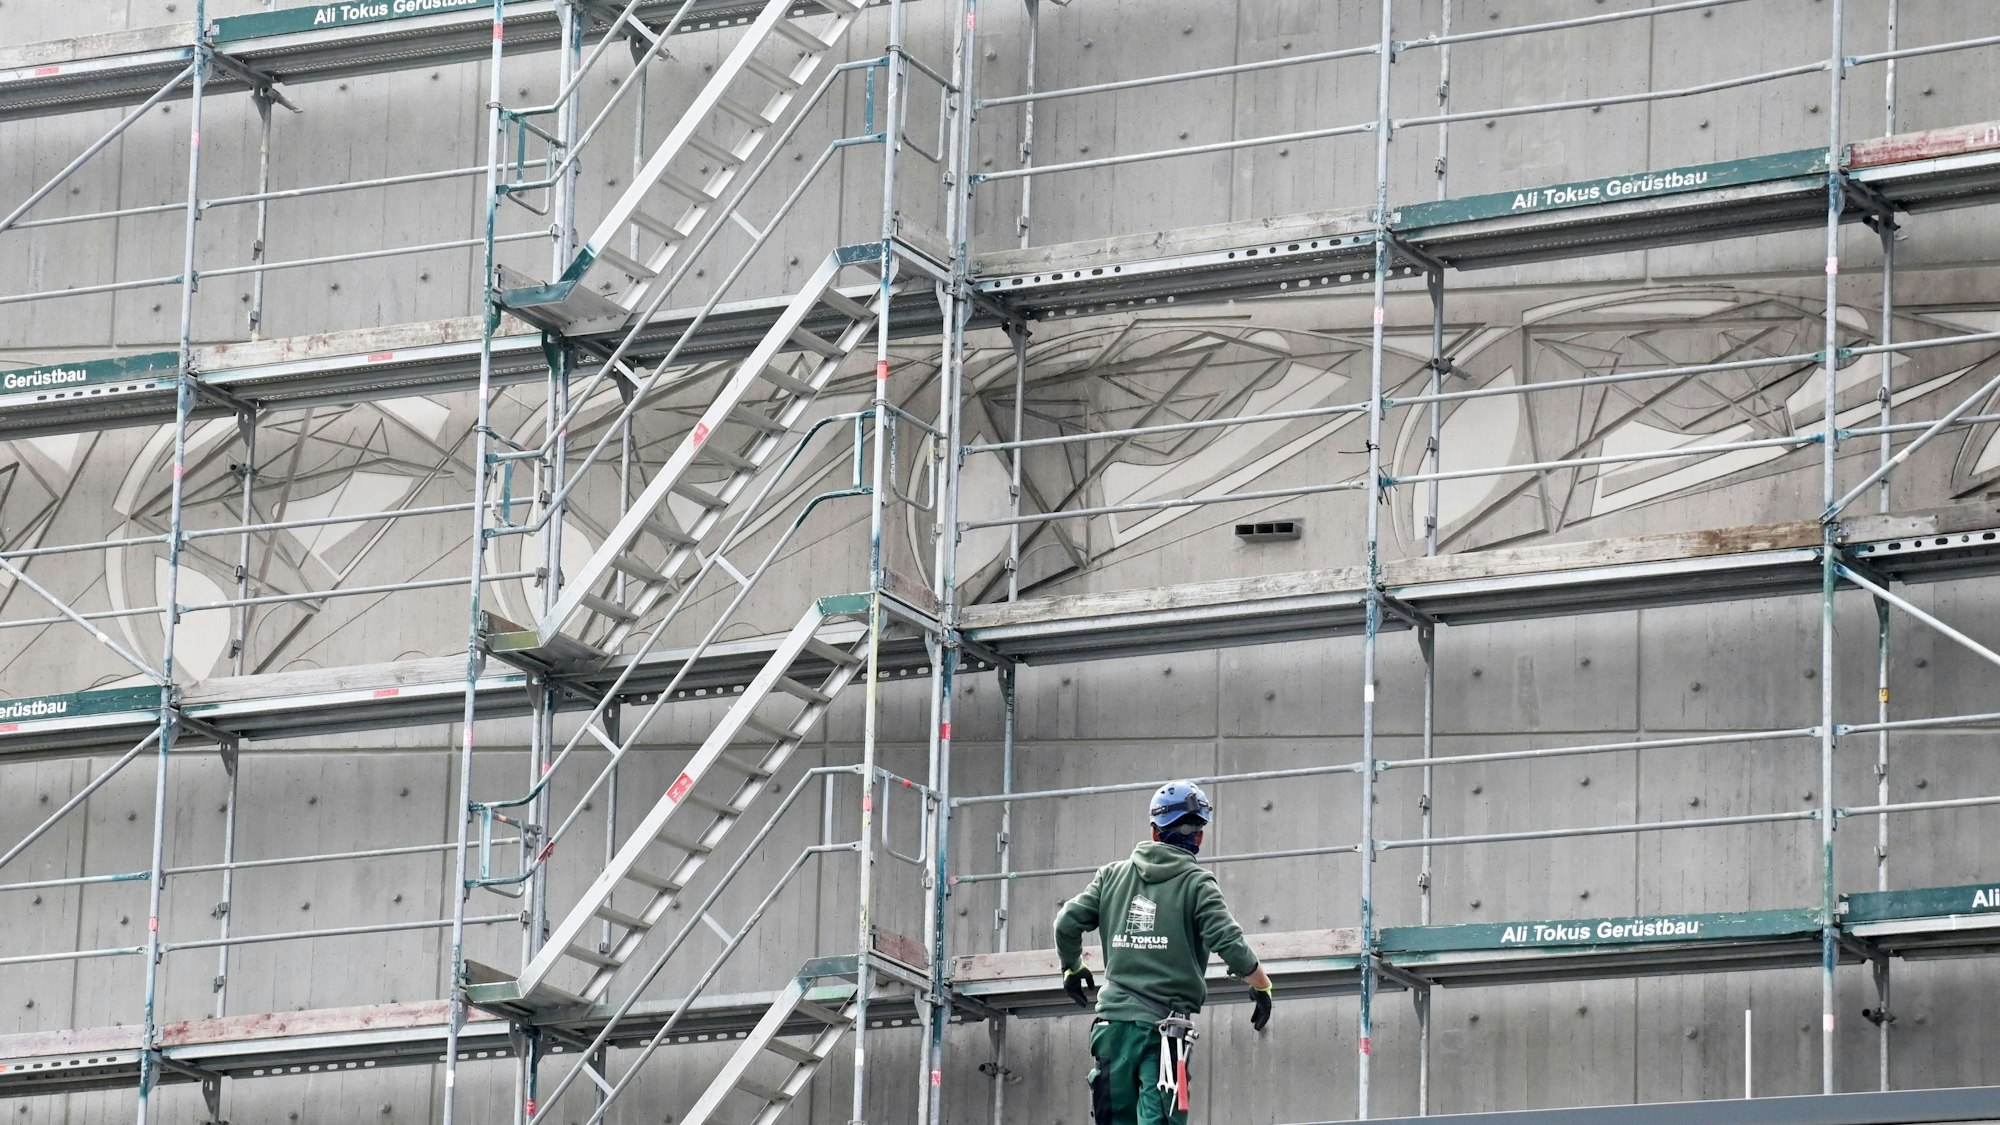 Ein Bauarbeiter ist vor einem Baugerüst zu sehen. Dahinter zeichnet sich das kunstvolle Relief auf der Fassade ab.